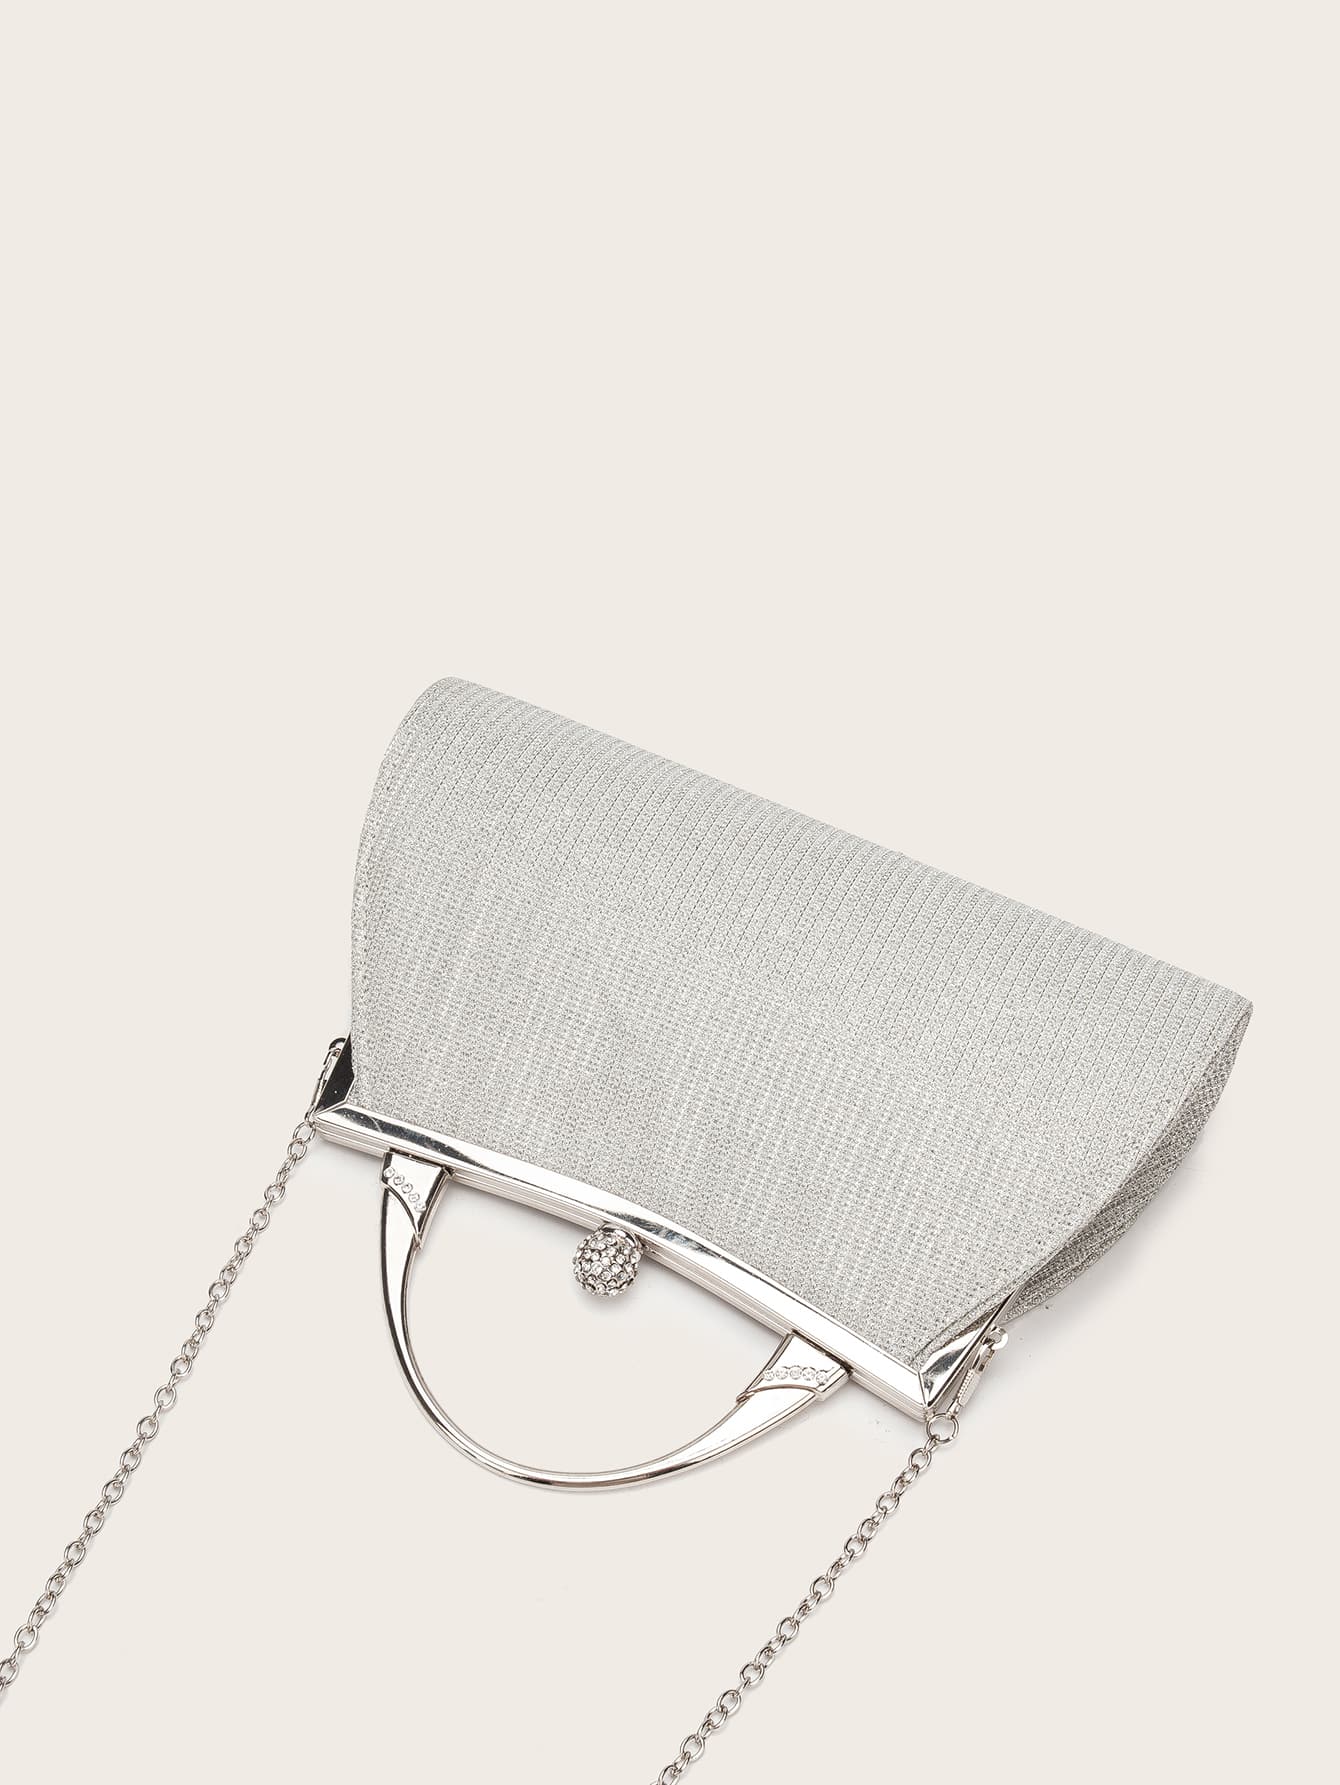 Rhinestone Decor Chain Clutch Bag